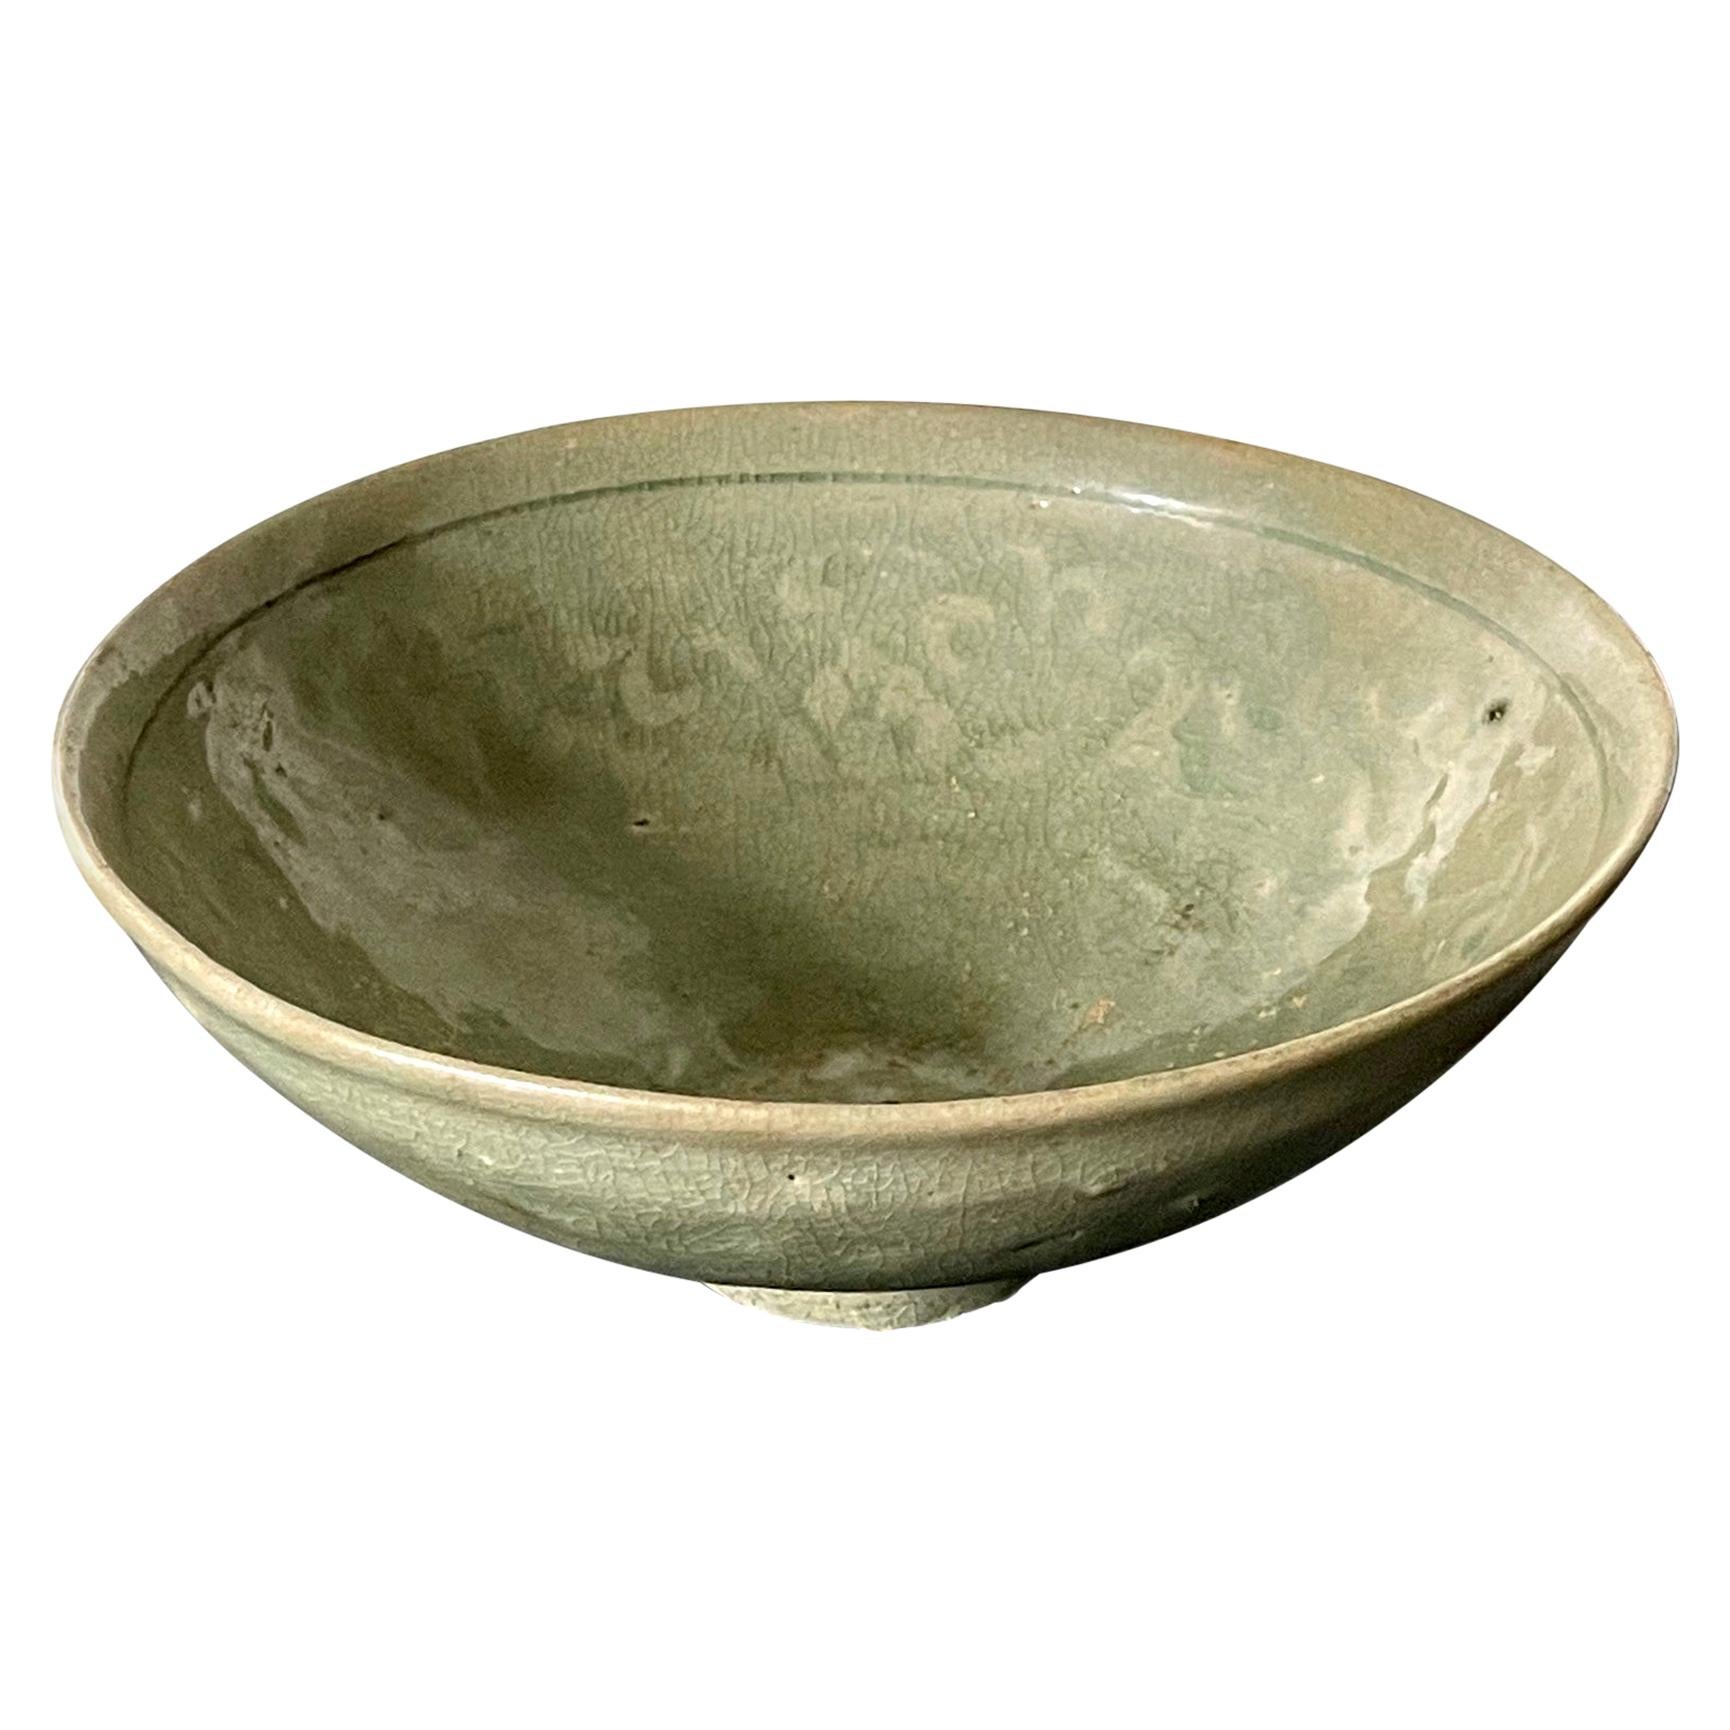 Antique Korean Ceramic Bowl with Incised Design  For Sale